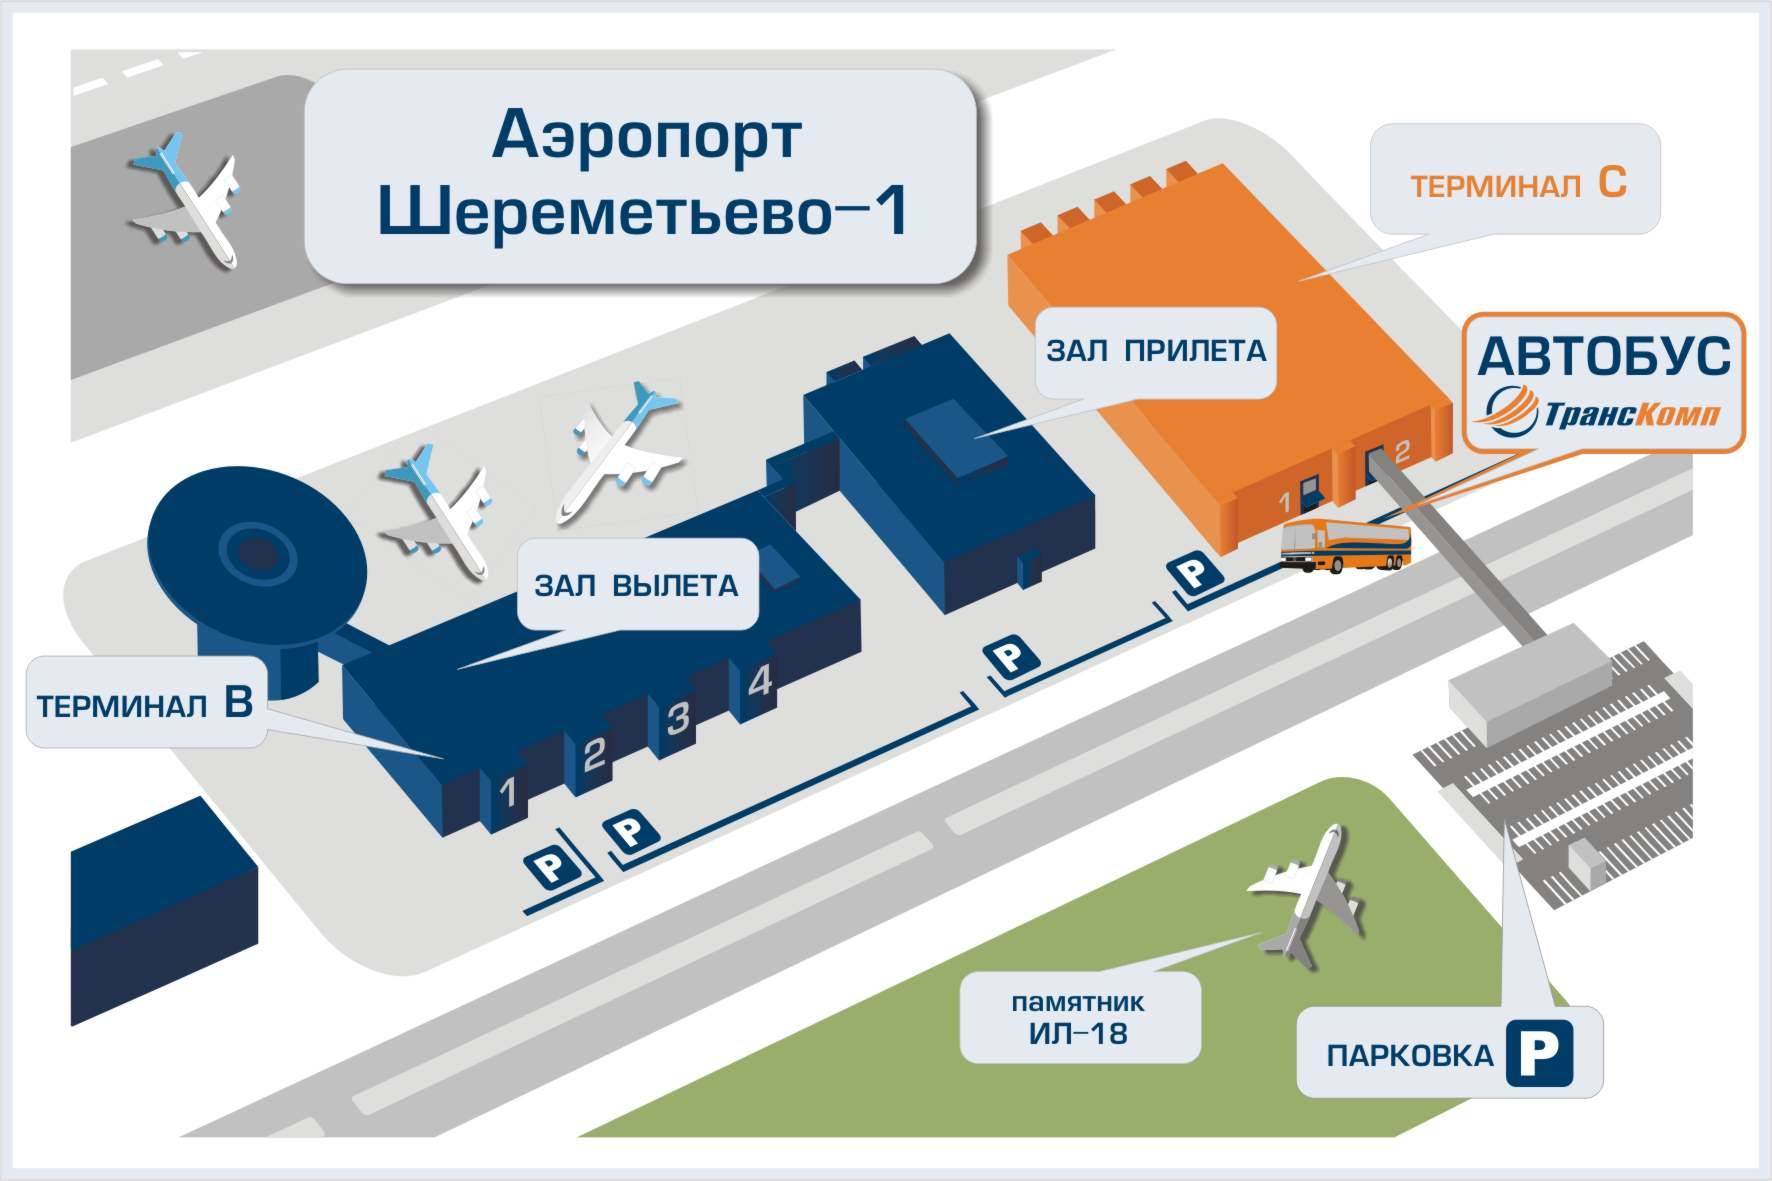 Аэропорт москва номер телефона. Схема аэропорта Шереметьево с терминалами. Терминал в Шереметьево схема аэропорта терминал в. Аэропорт Шереметьево терминал b схема. Аэропорт Шереметьево расположение терминалов.